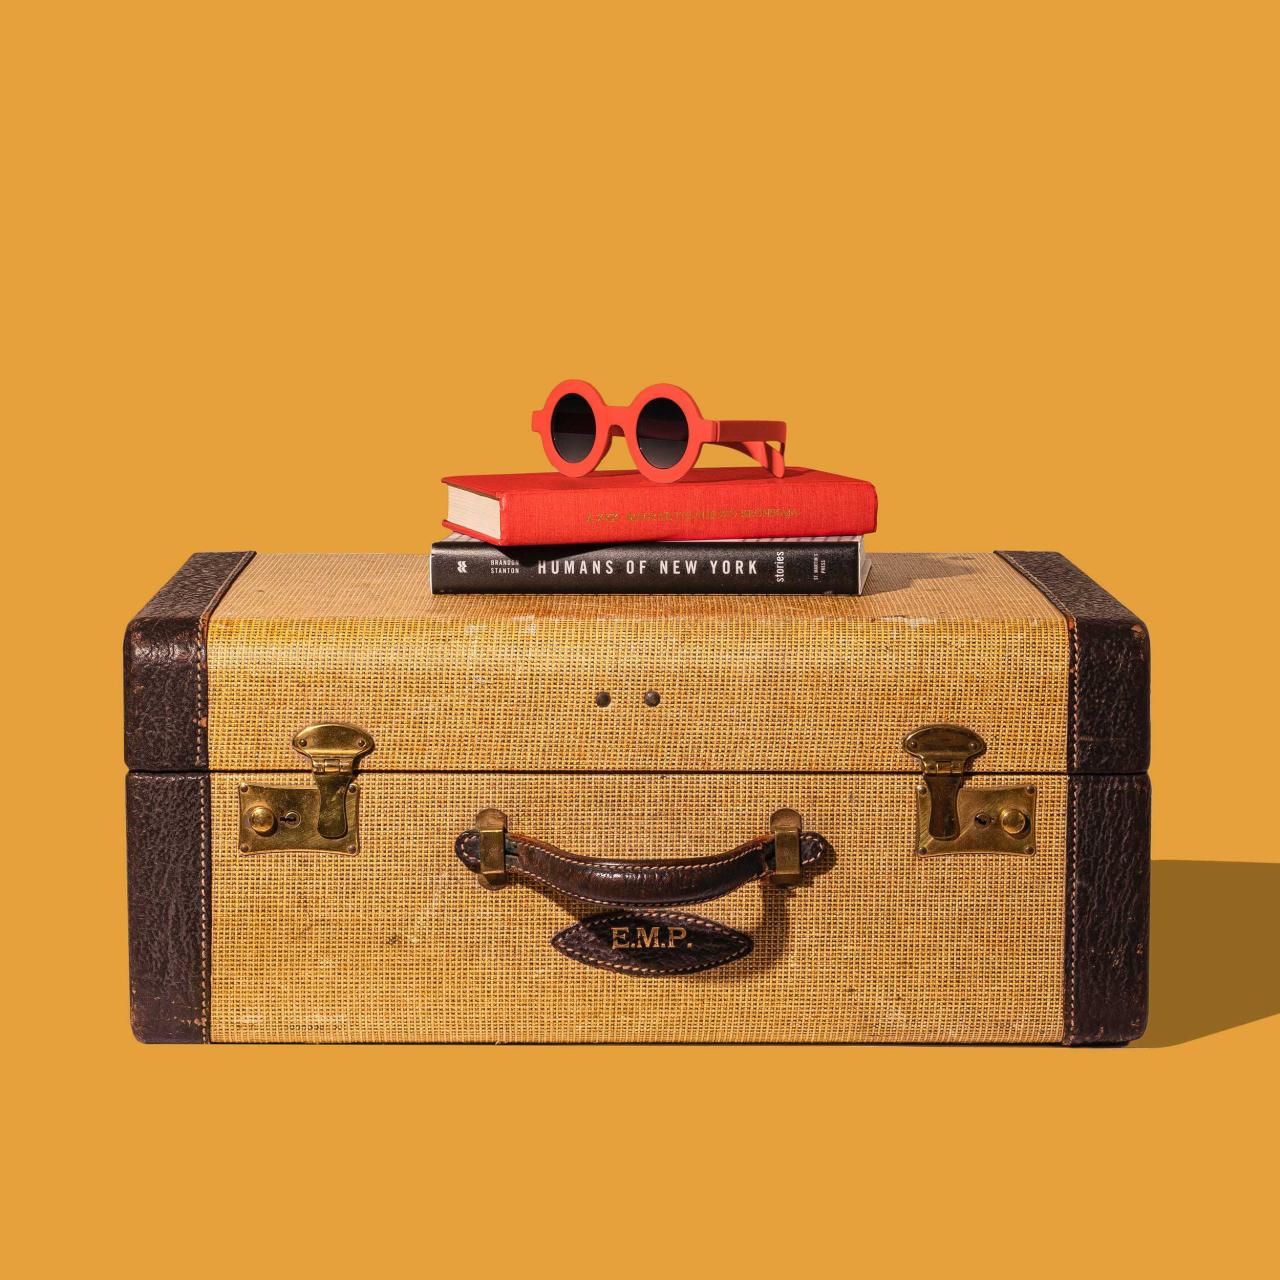 Brauner Koffer mit zwei Büchern und einer roten Sonnenbrille drauf